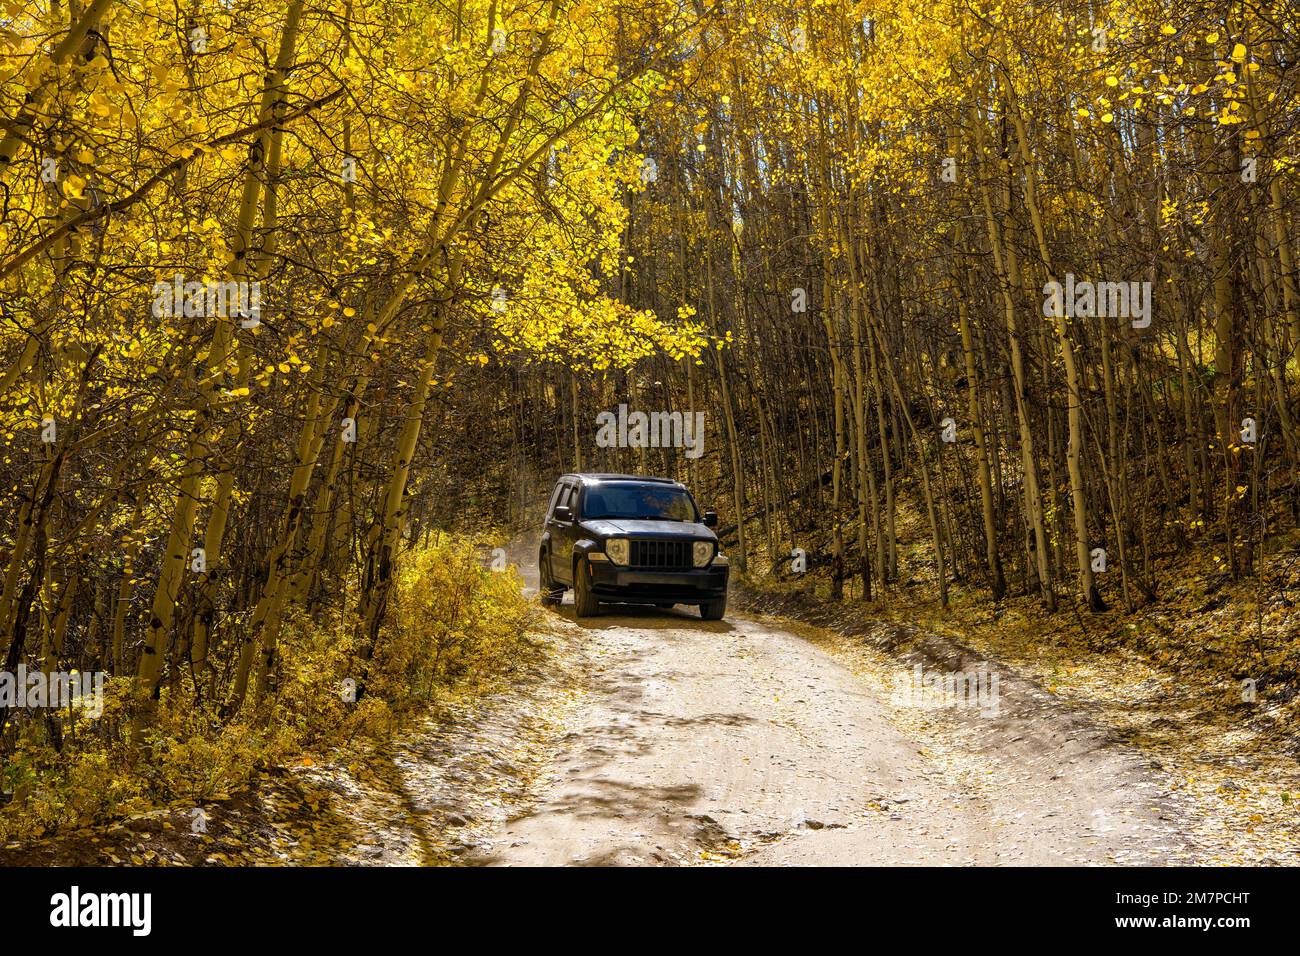 Autumn Aspen Grove - Un monospace en jeep qui roule sur une route de campagne en terre dans une bosquet de peuplier faux-tremble d'or dense pendant un après-midi d'automne ensoleillé. Leadville, Colorado, États-Unis. Banque D'Images